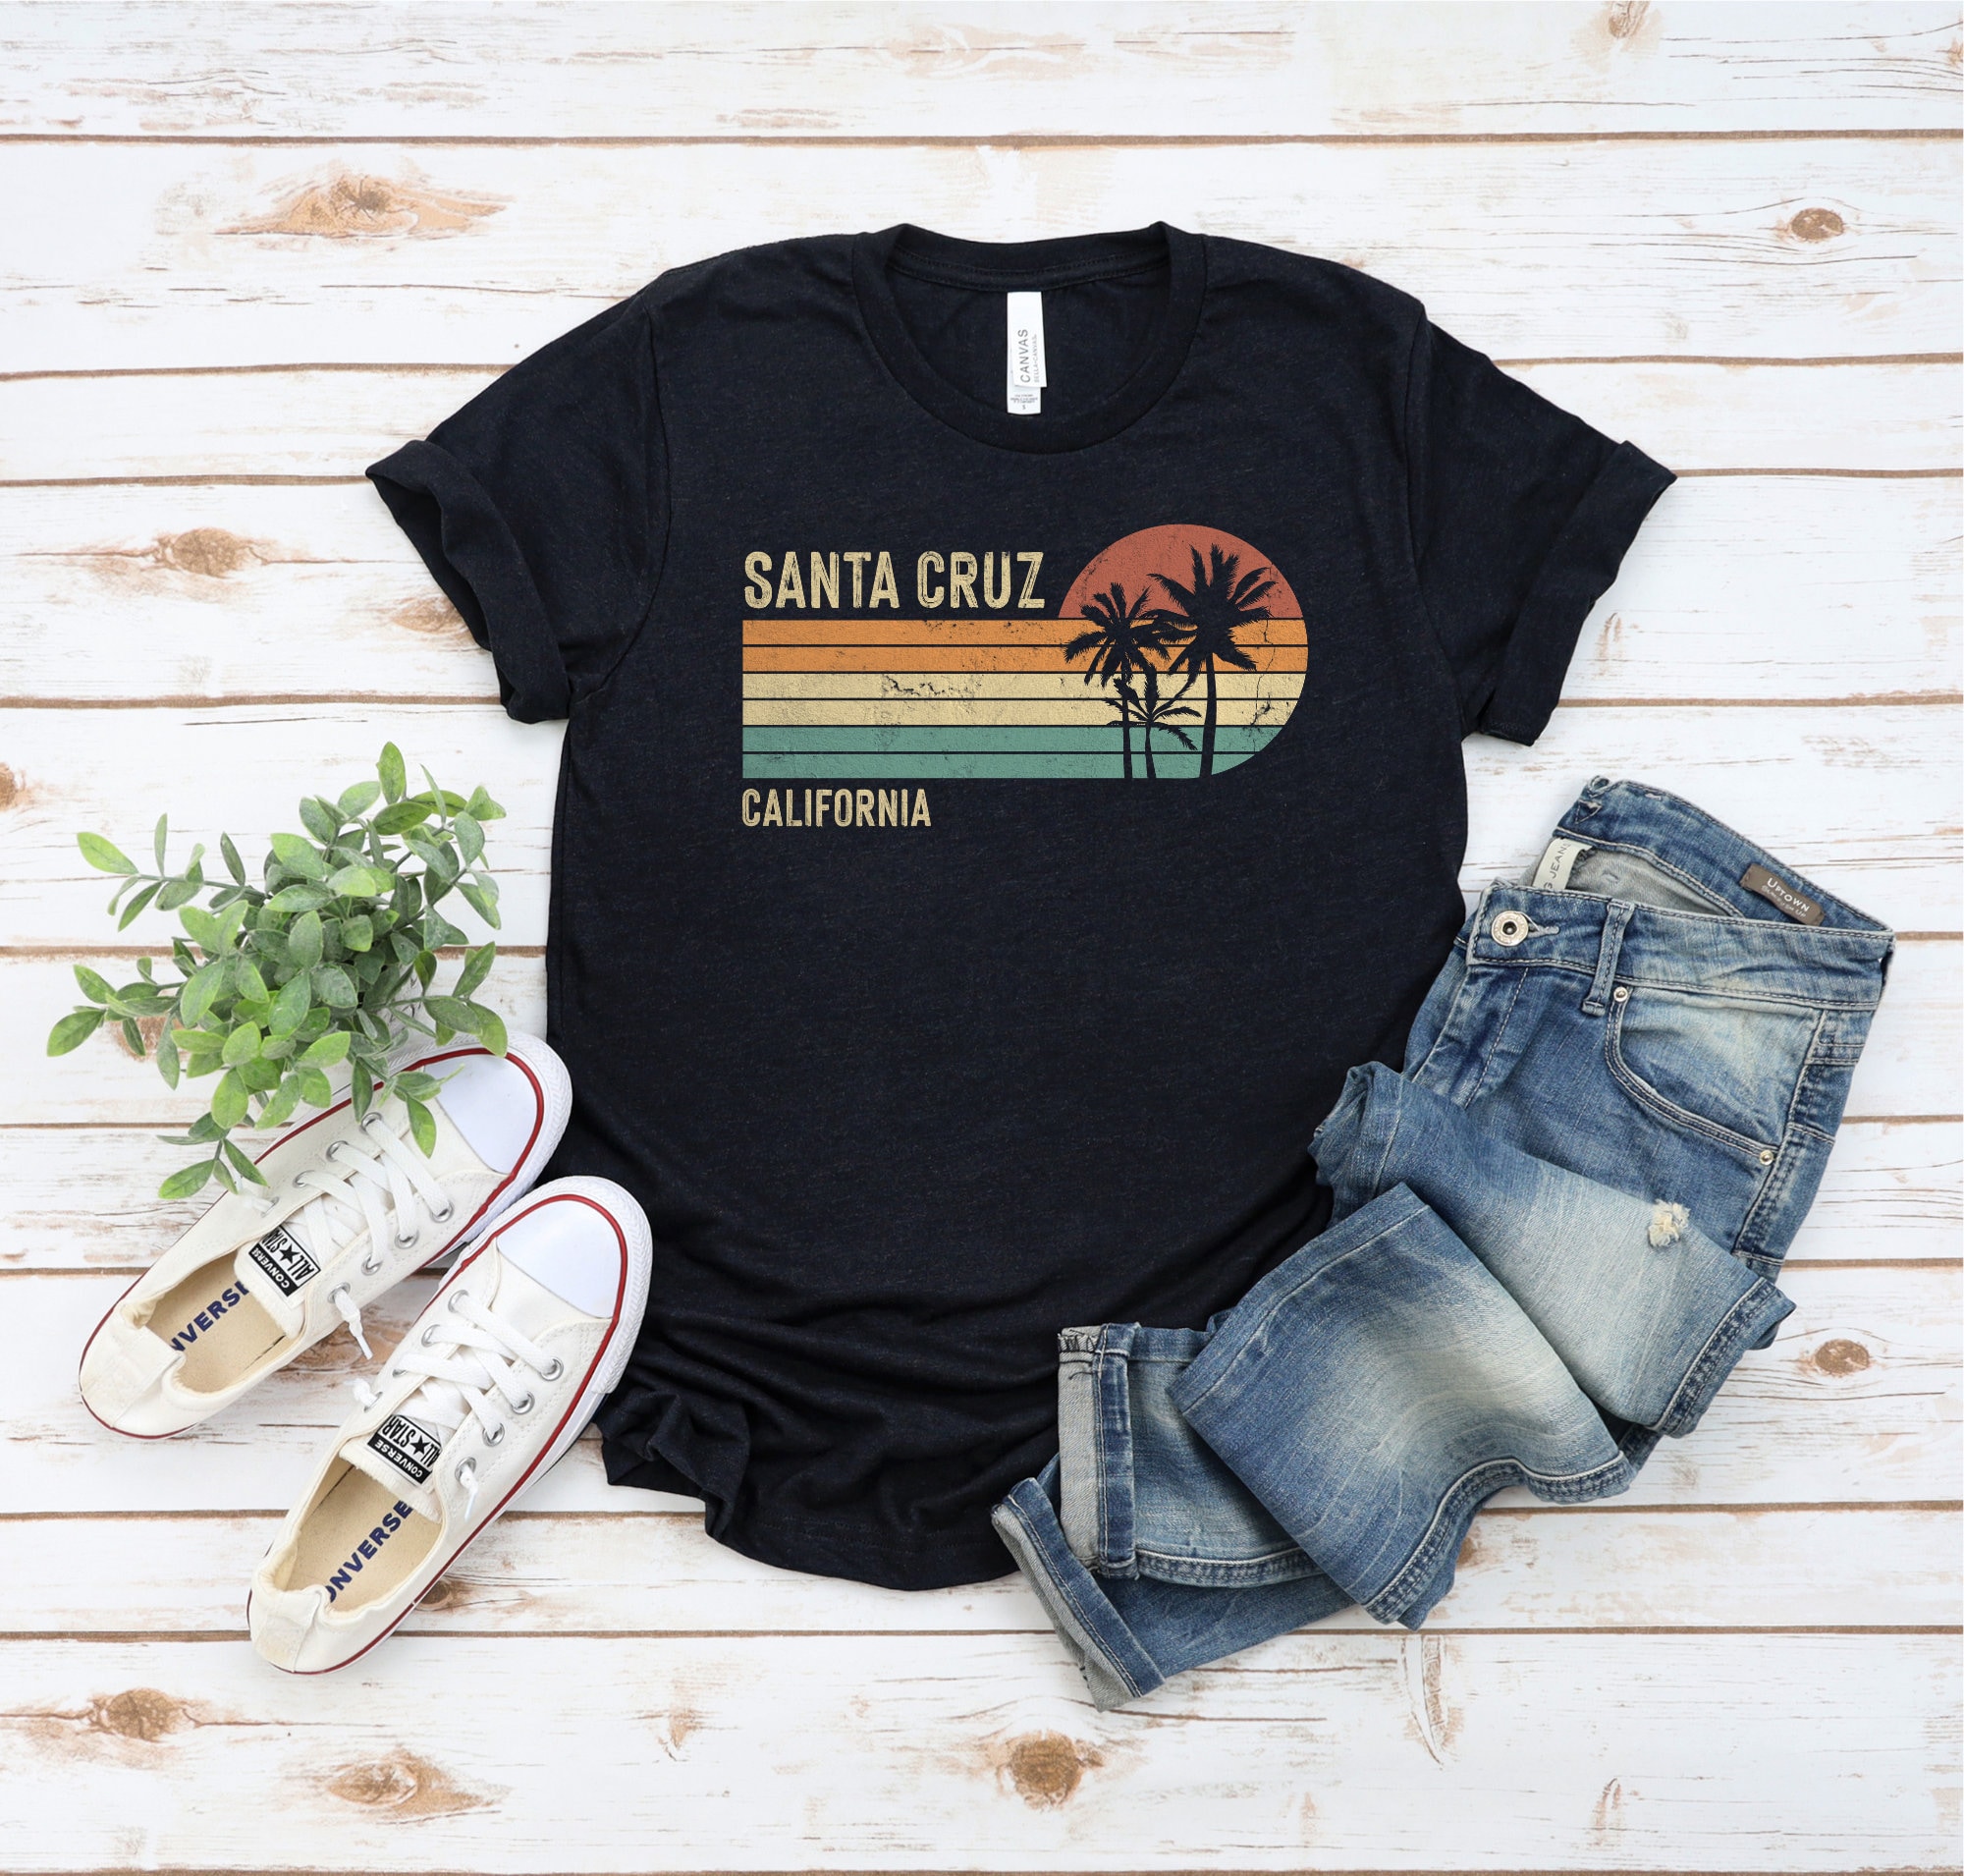 California Vintage 70s 80s Style Santa Cruz T-shirt, Santa Cruz Ca Shirt